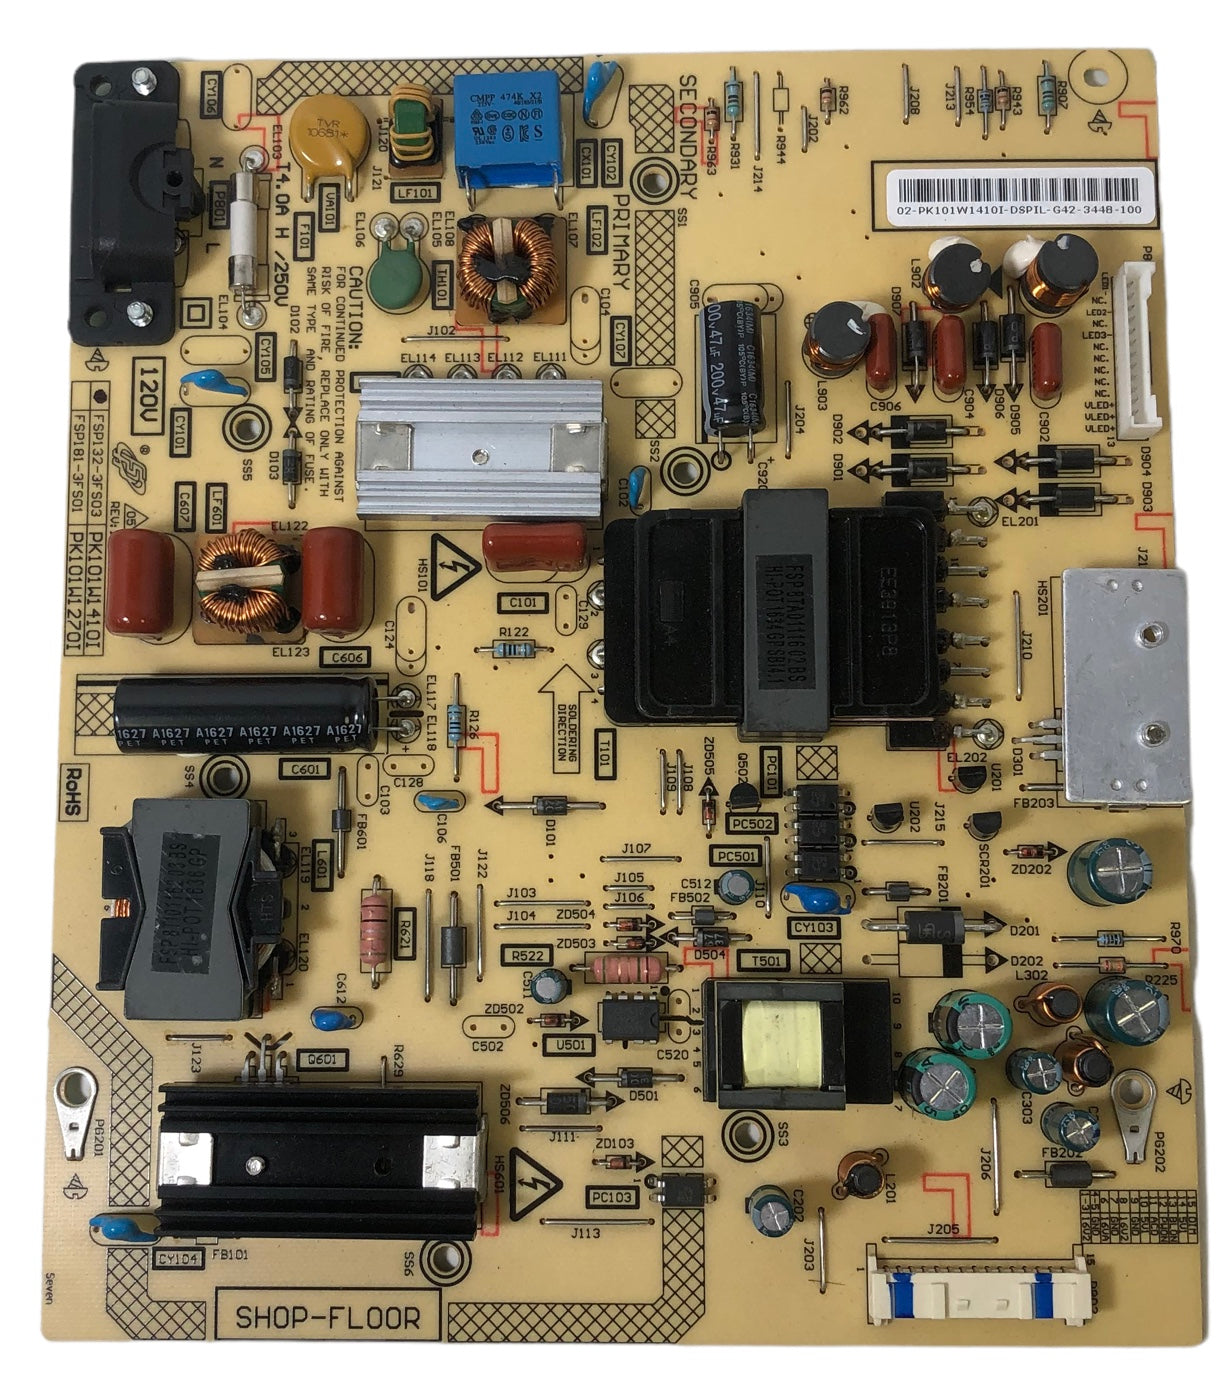 Toshiba PK101W1410I Power Supply / LED Board